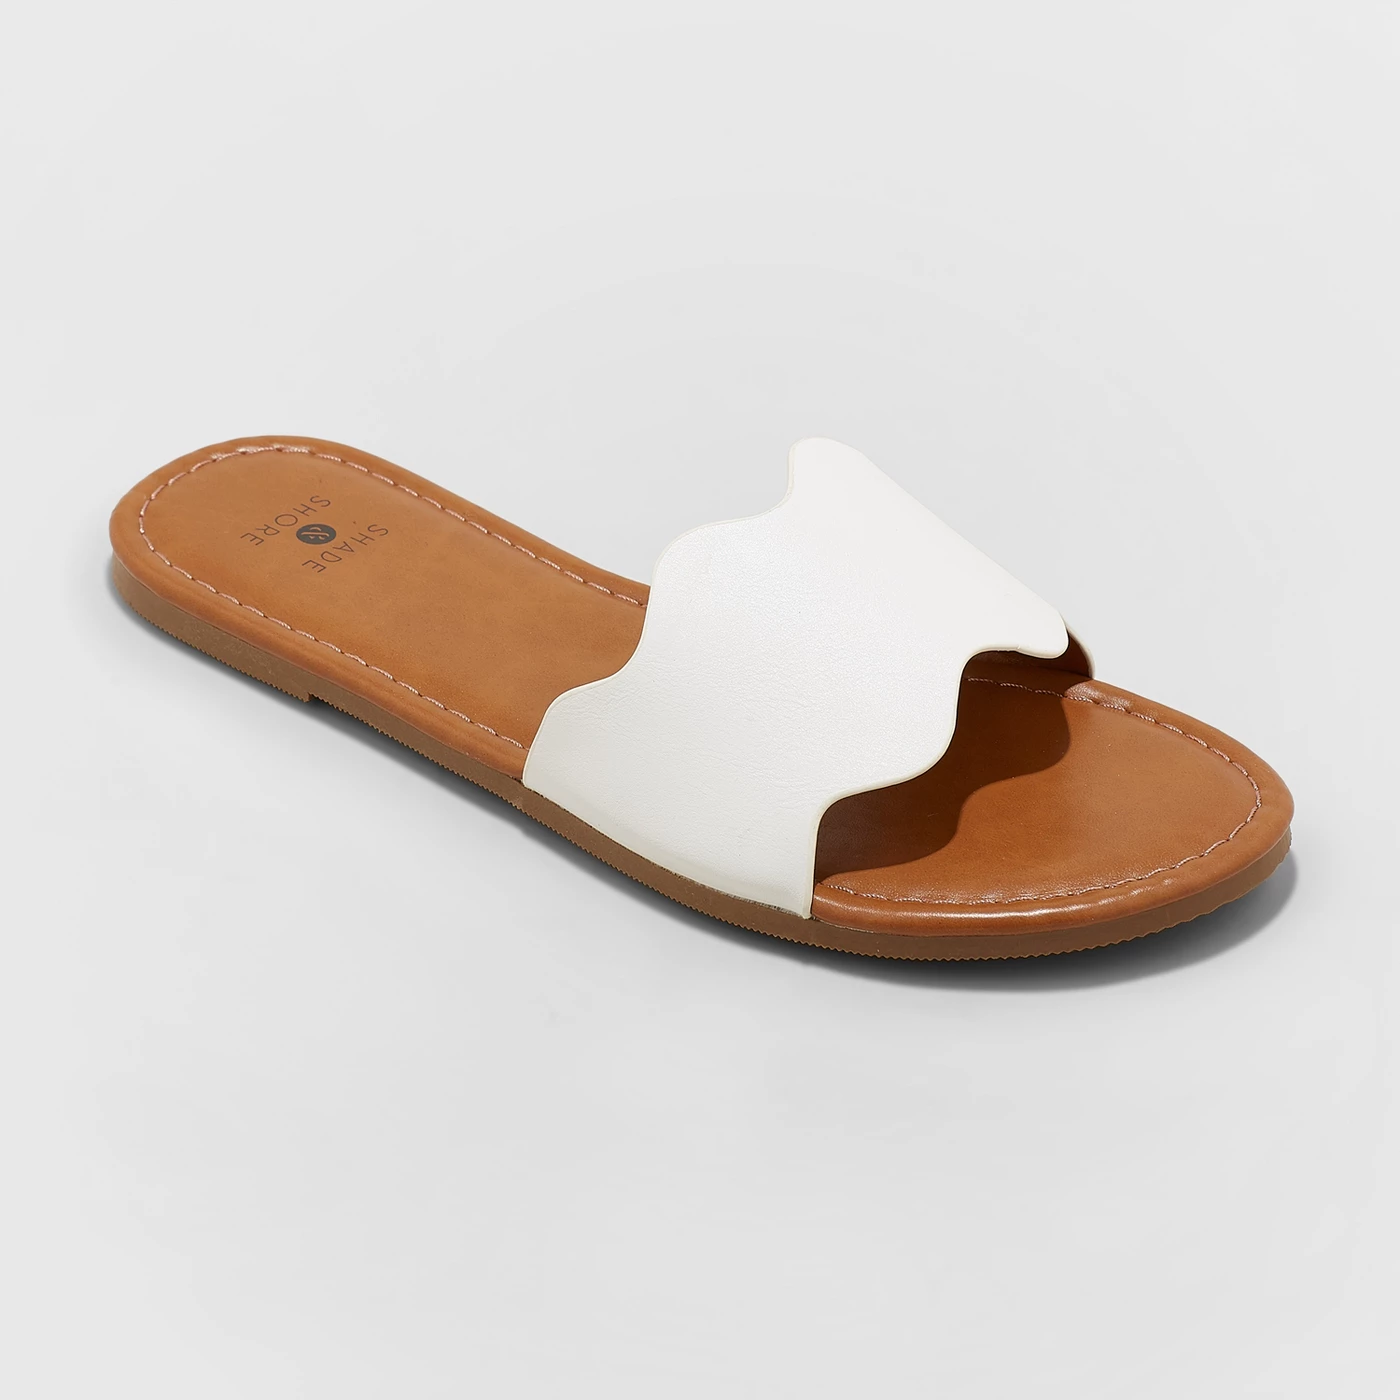 Women's Kate Scalloped Slide Sandals - Shade & Shoreâ¢ - image 1 of 3